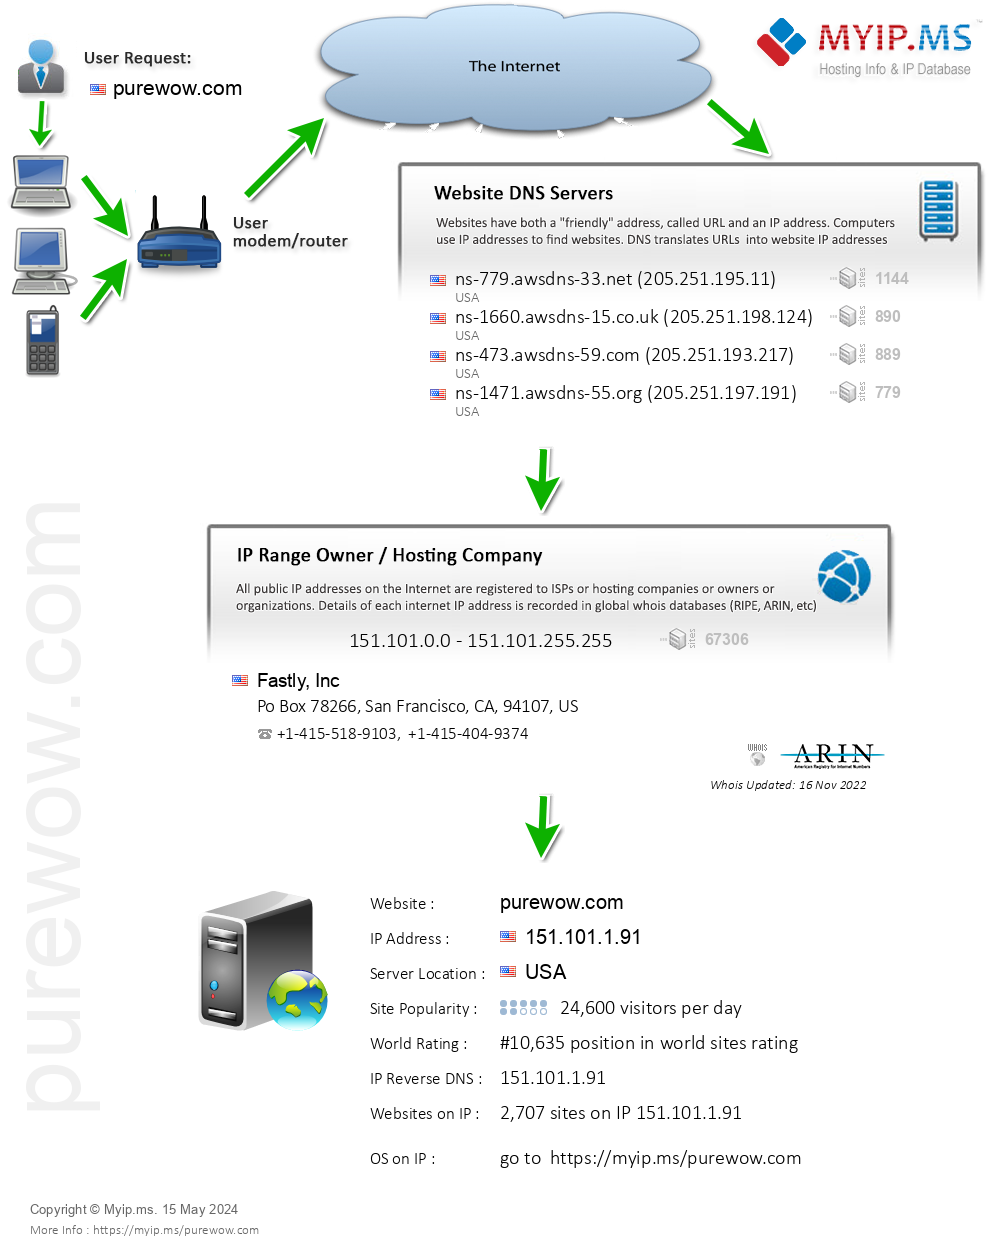 Purewow.com - Website Hosting Visual IP Diagram